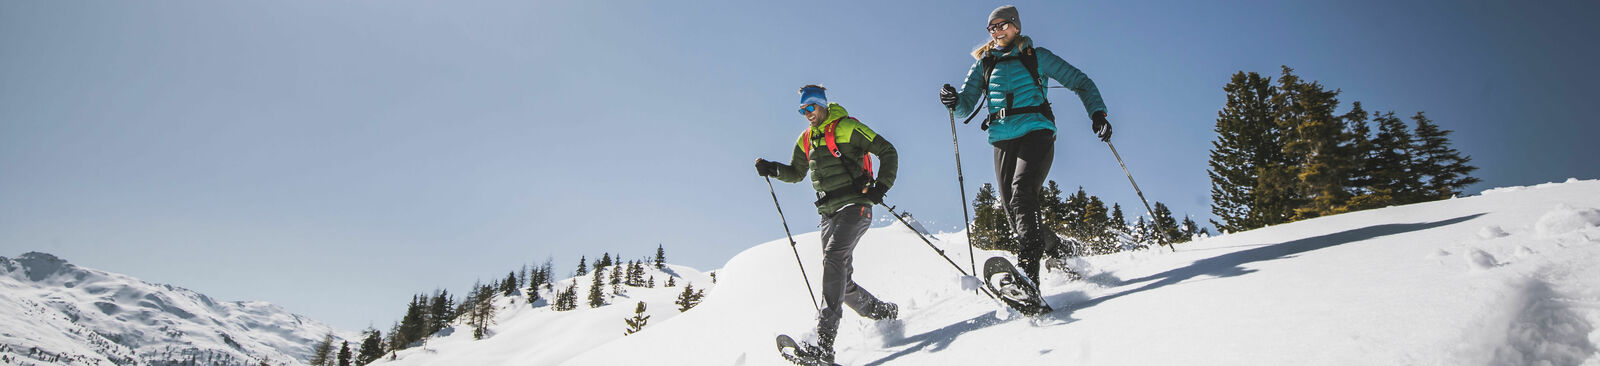 In der Silberregion Karwendel stehen 20 ausgeschilderte Schneeschuhrouten zur Wahl.